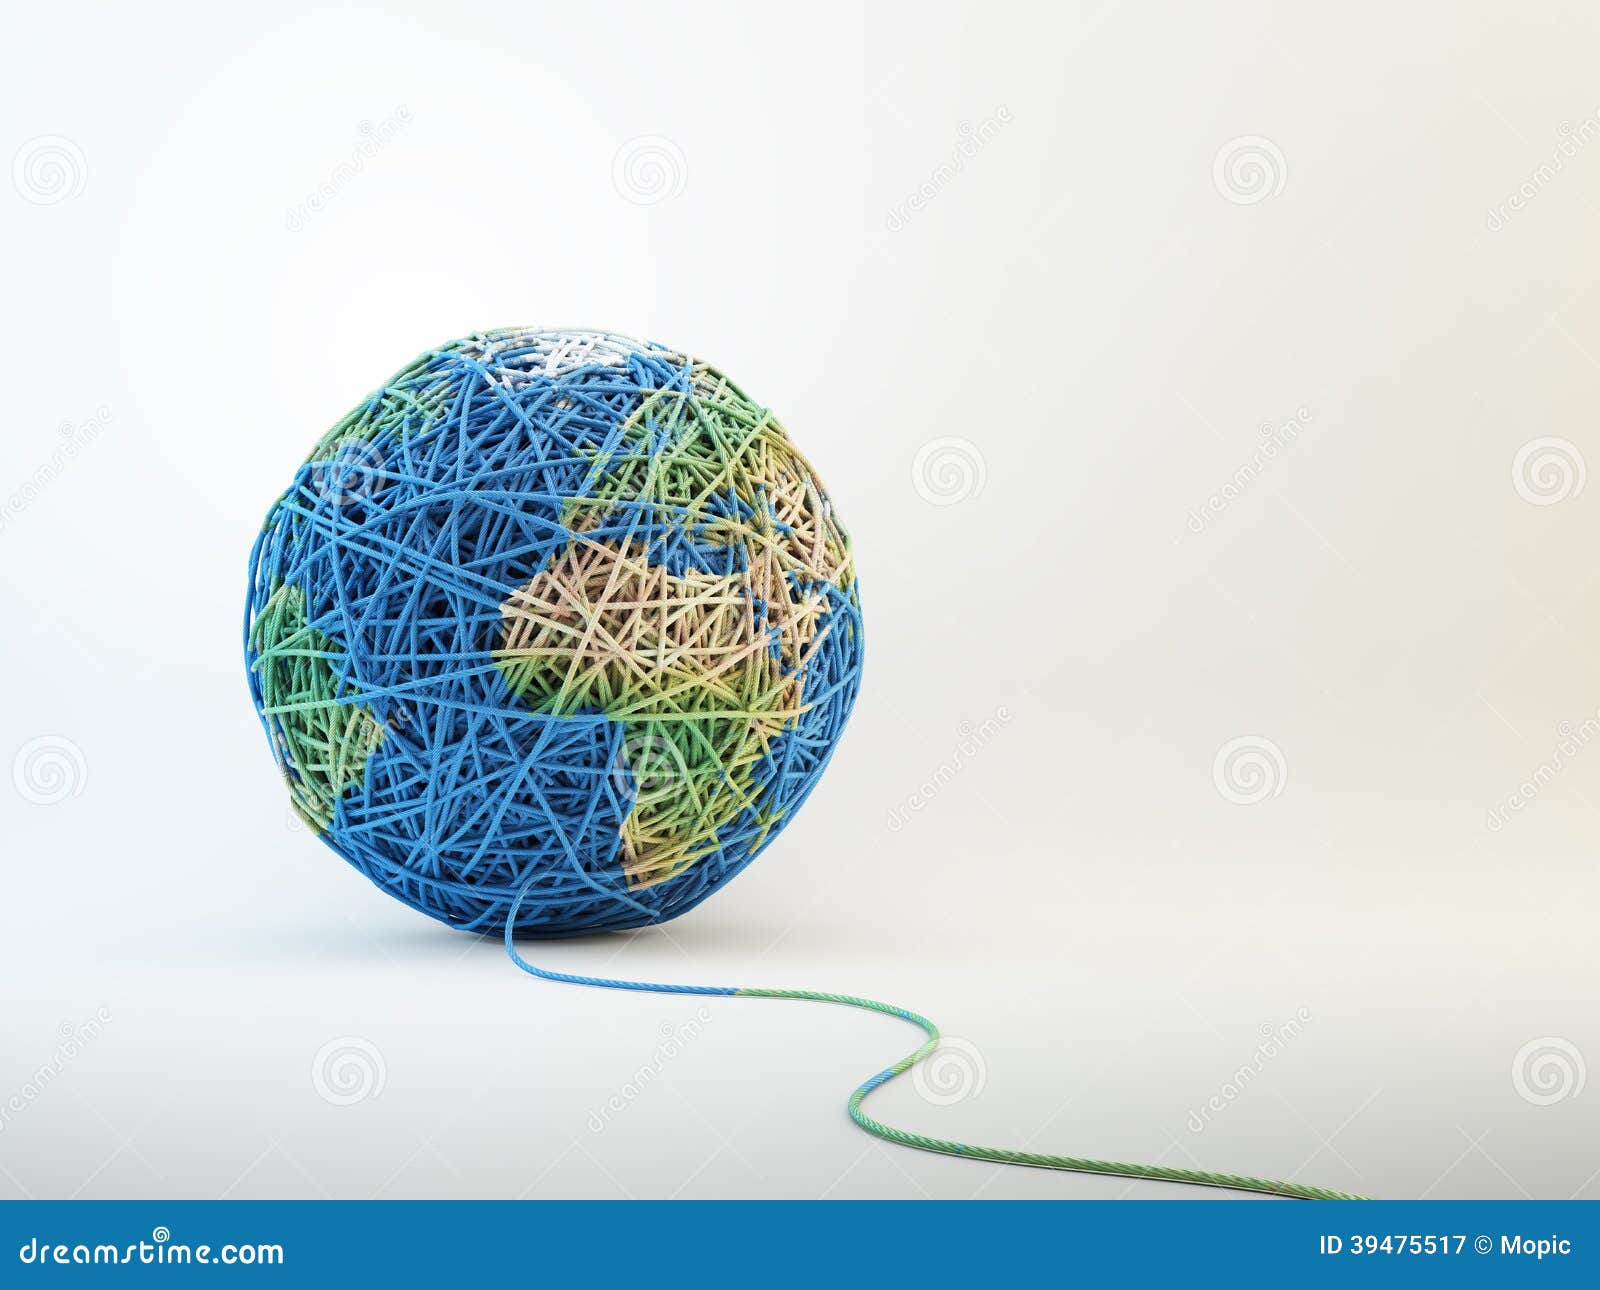 world map cball of wool